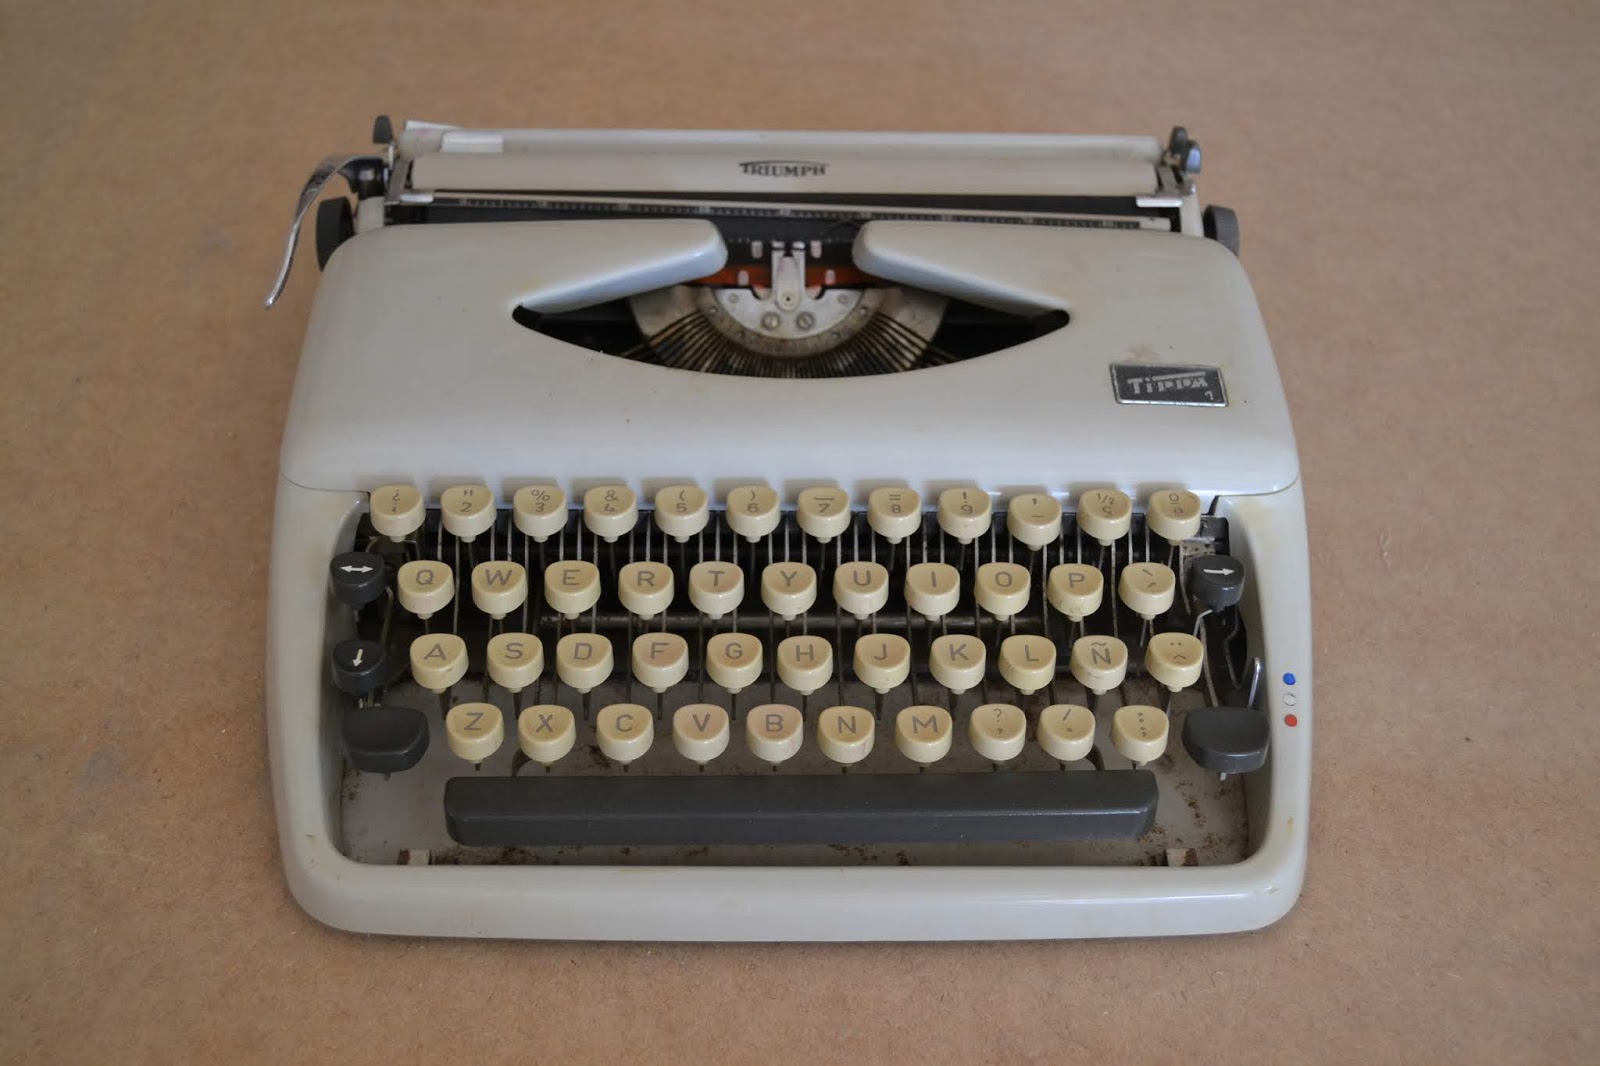 Como decorar con máquinas de escribir ideas y claves para decorar con ellas